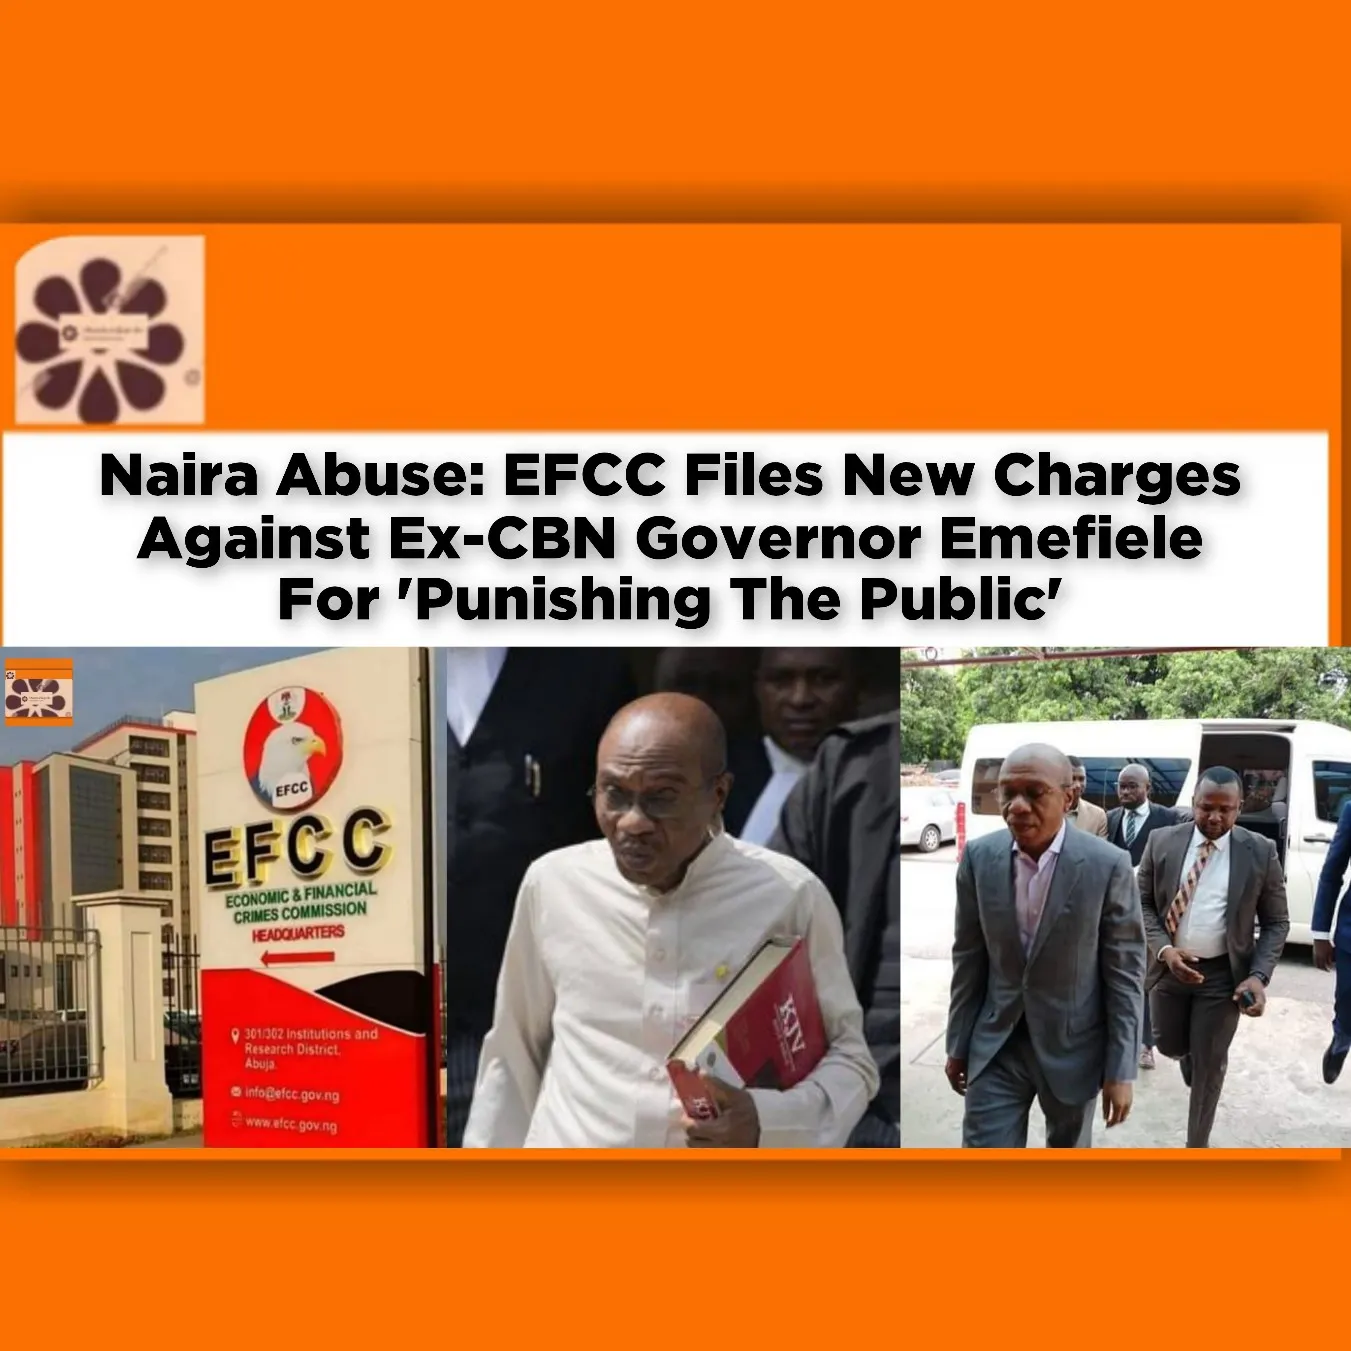 Naira Abuse: EFCC Files New Charges Against Ex-CBN Governor Emefiele For 'Punishing The Public' ~ OsazuwaAkonedo #₦1000 #₦200 #₦500 #Buhari #cbn #EFCC #Emefiele #Godwin #Muhammadu #Naira #Notes